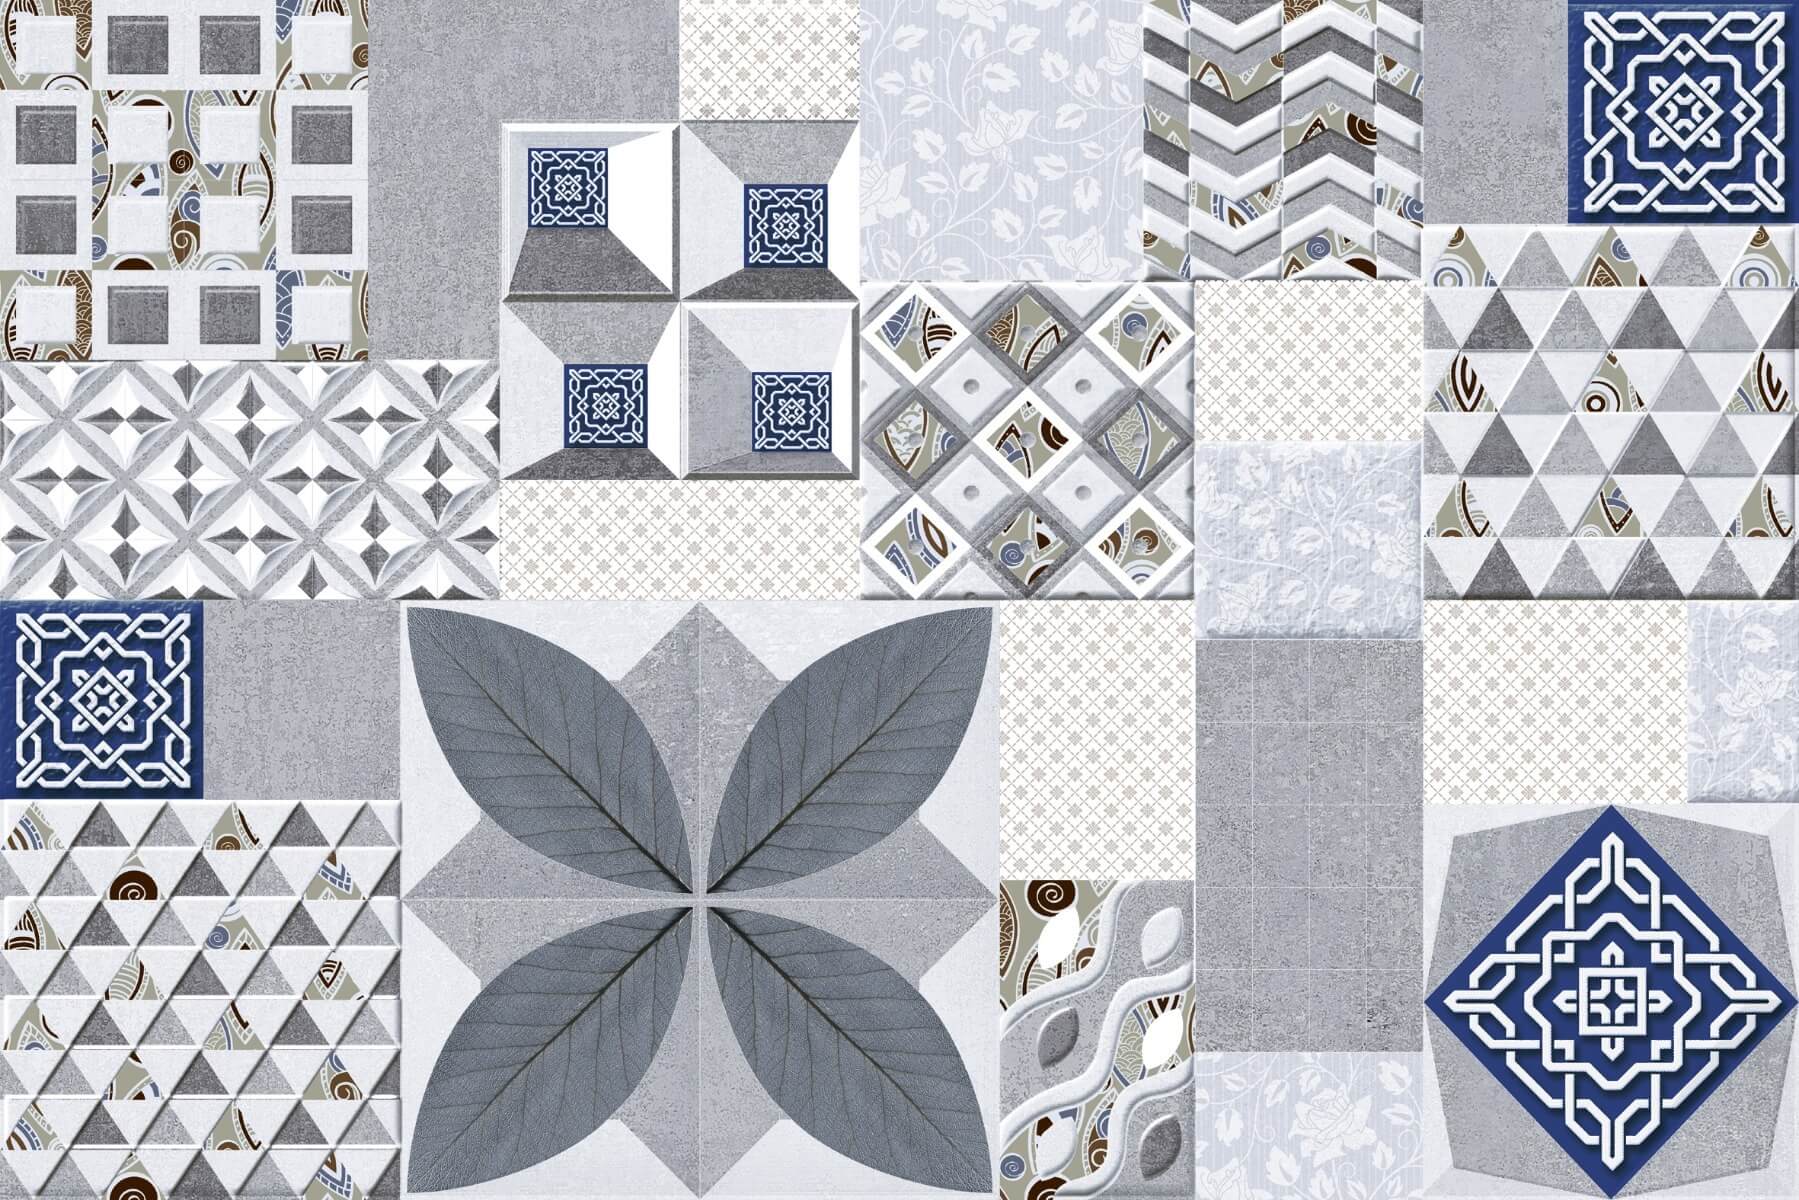 Highlighter Tiles for Bathroom Tiles, Kitchen Tiles